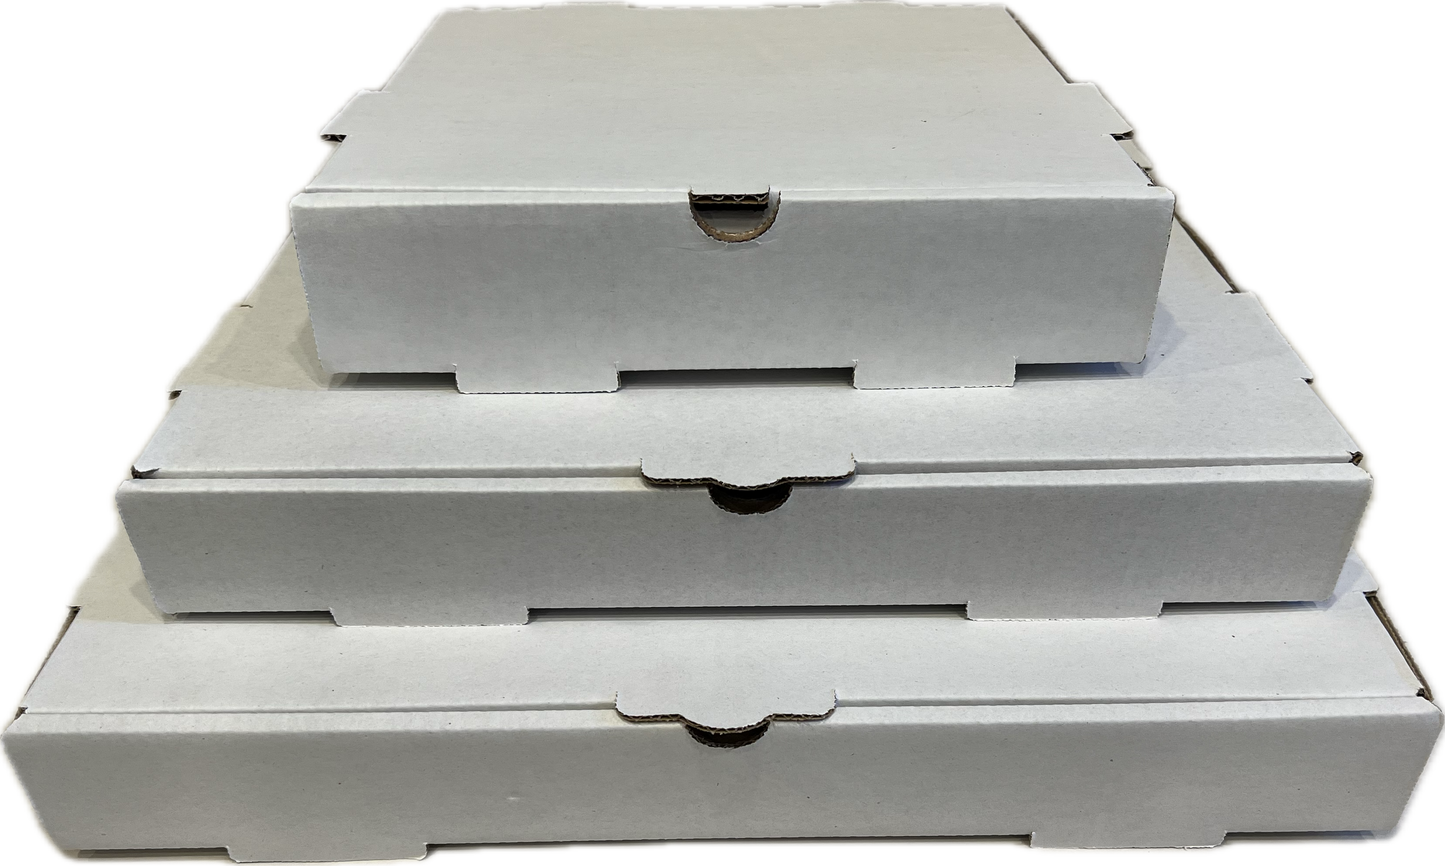 16 x 16 x 2 white pizza box